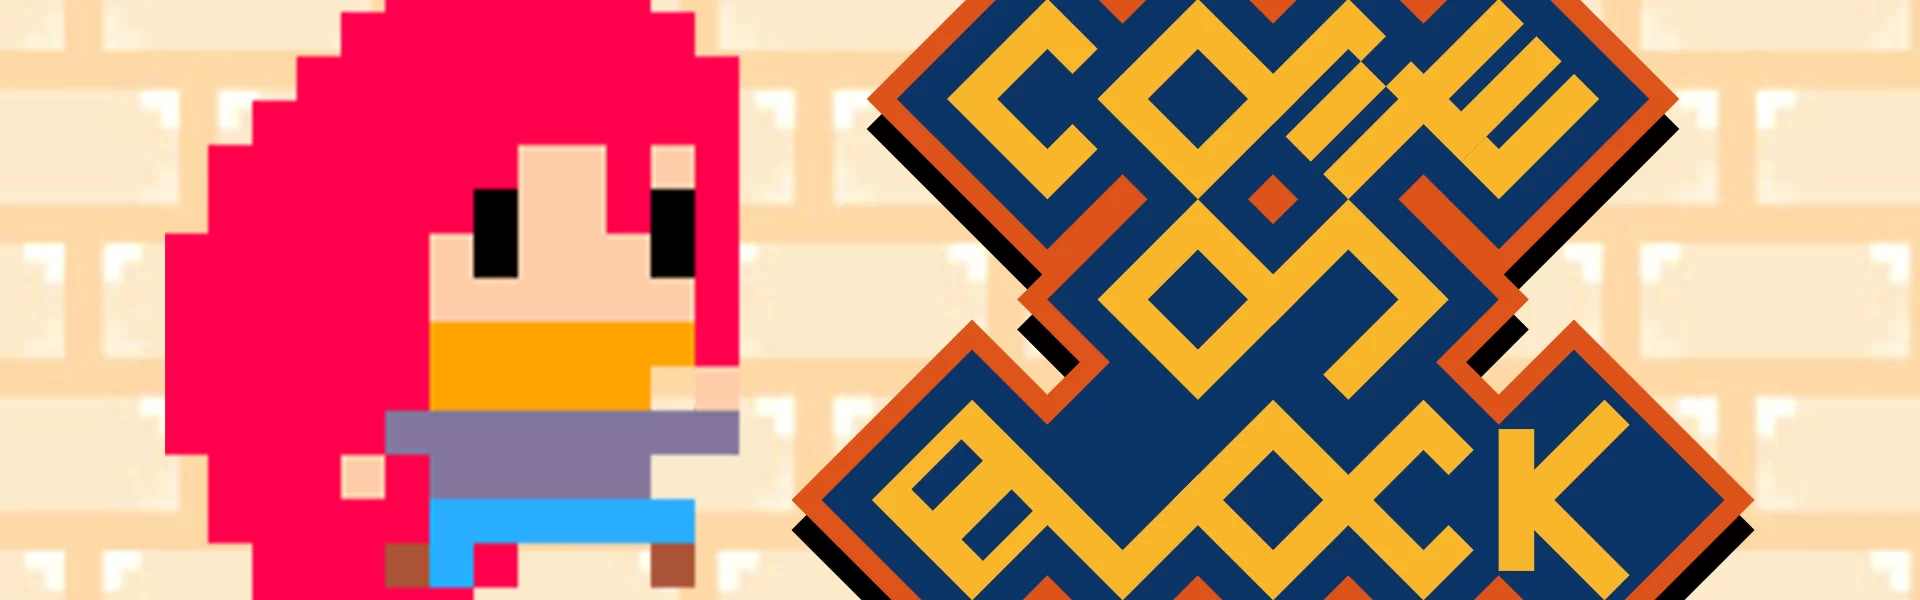 総合コンテンツサイト「竜平堂 (西野竜平)」のPC用ゲーム「Come On Block」のバナー画像